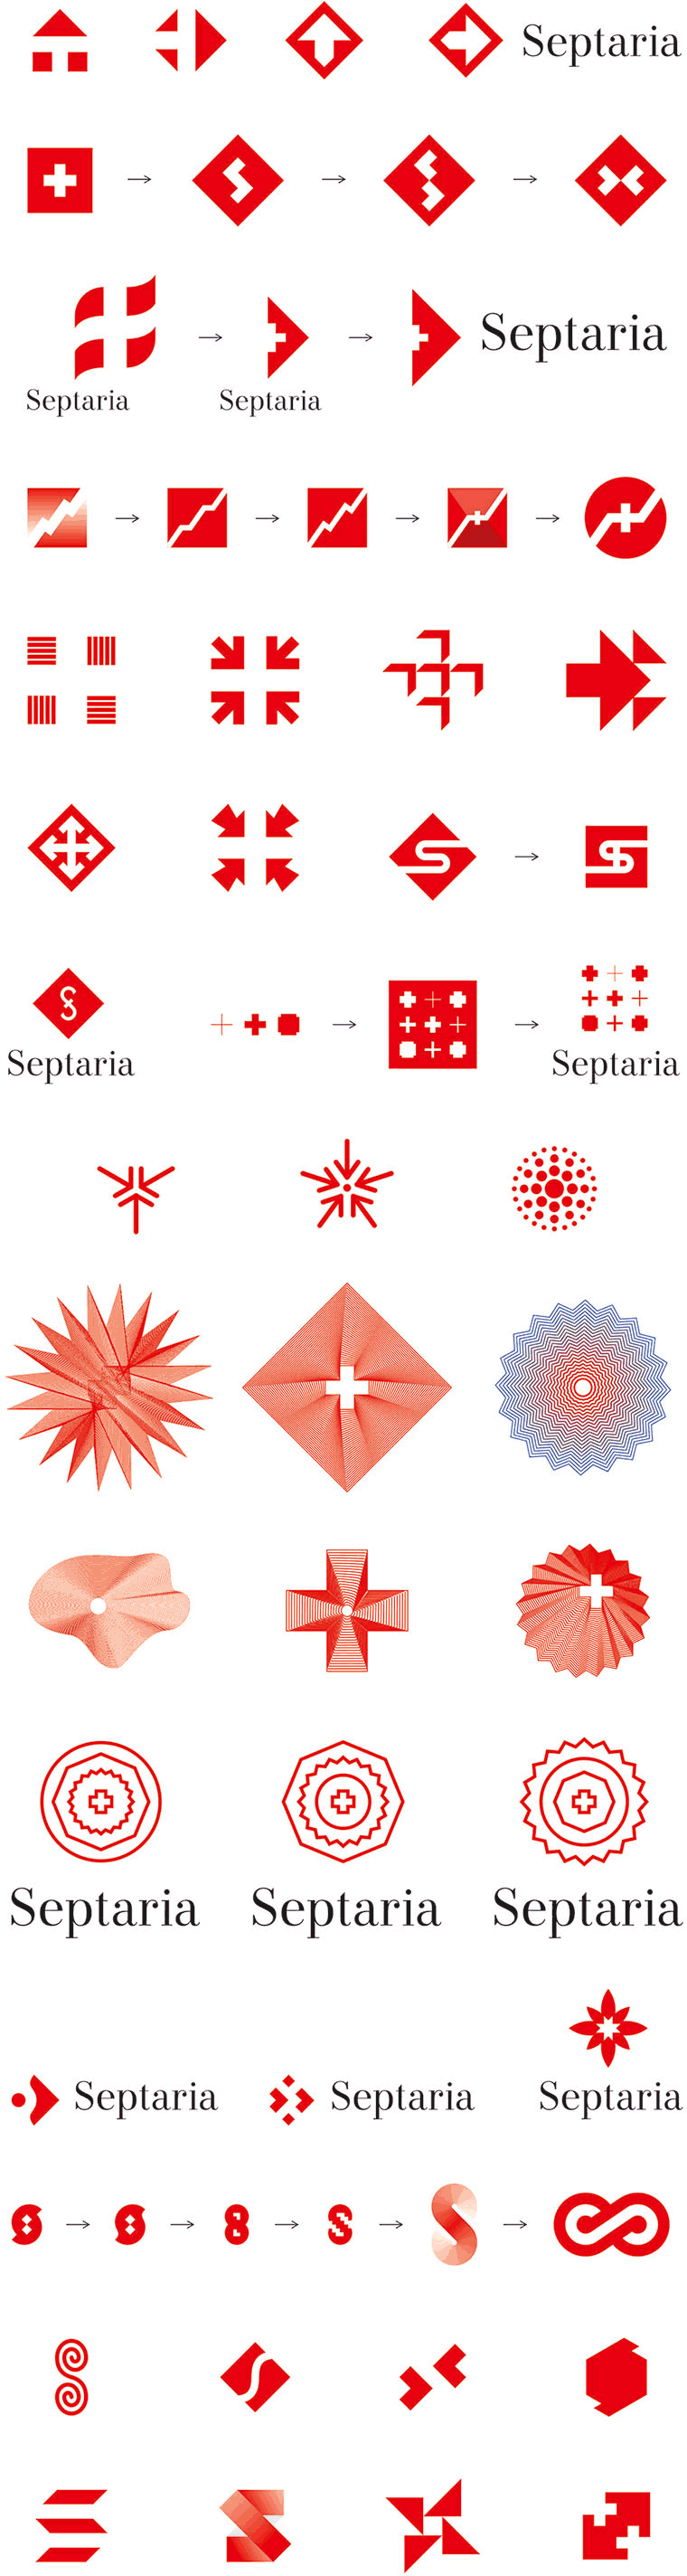 septaria logo process 15